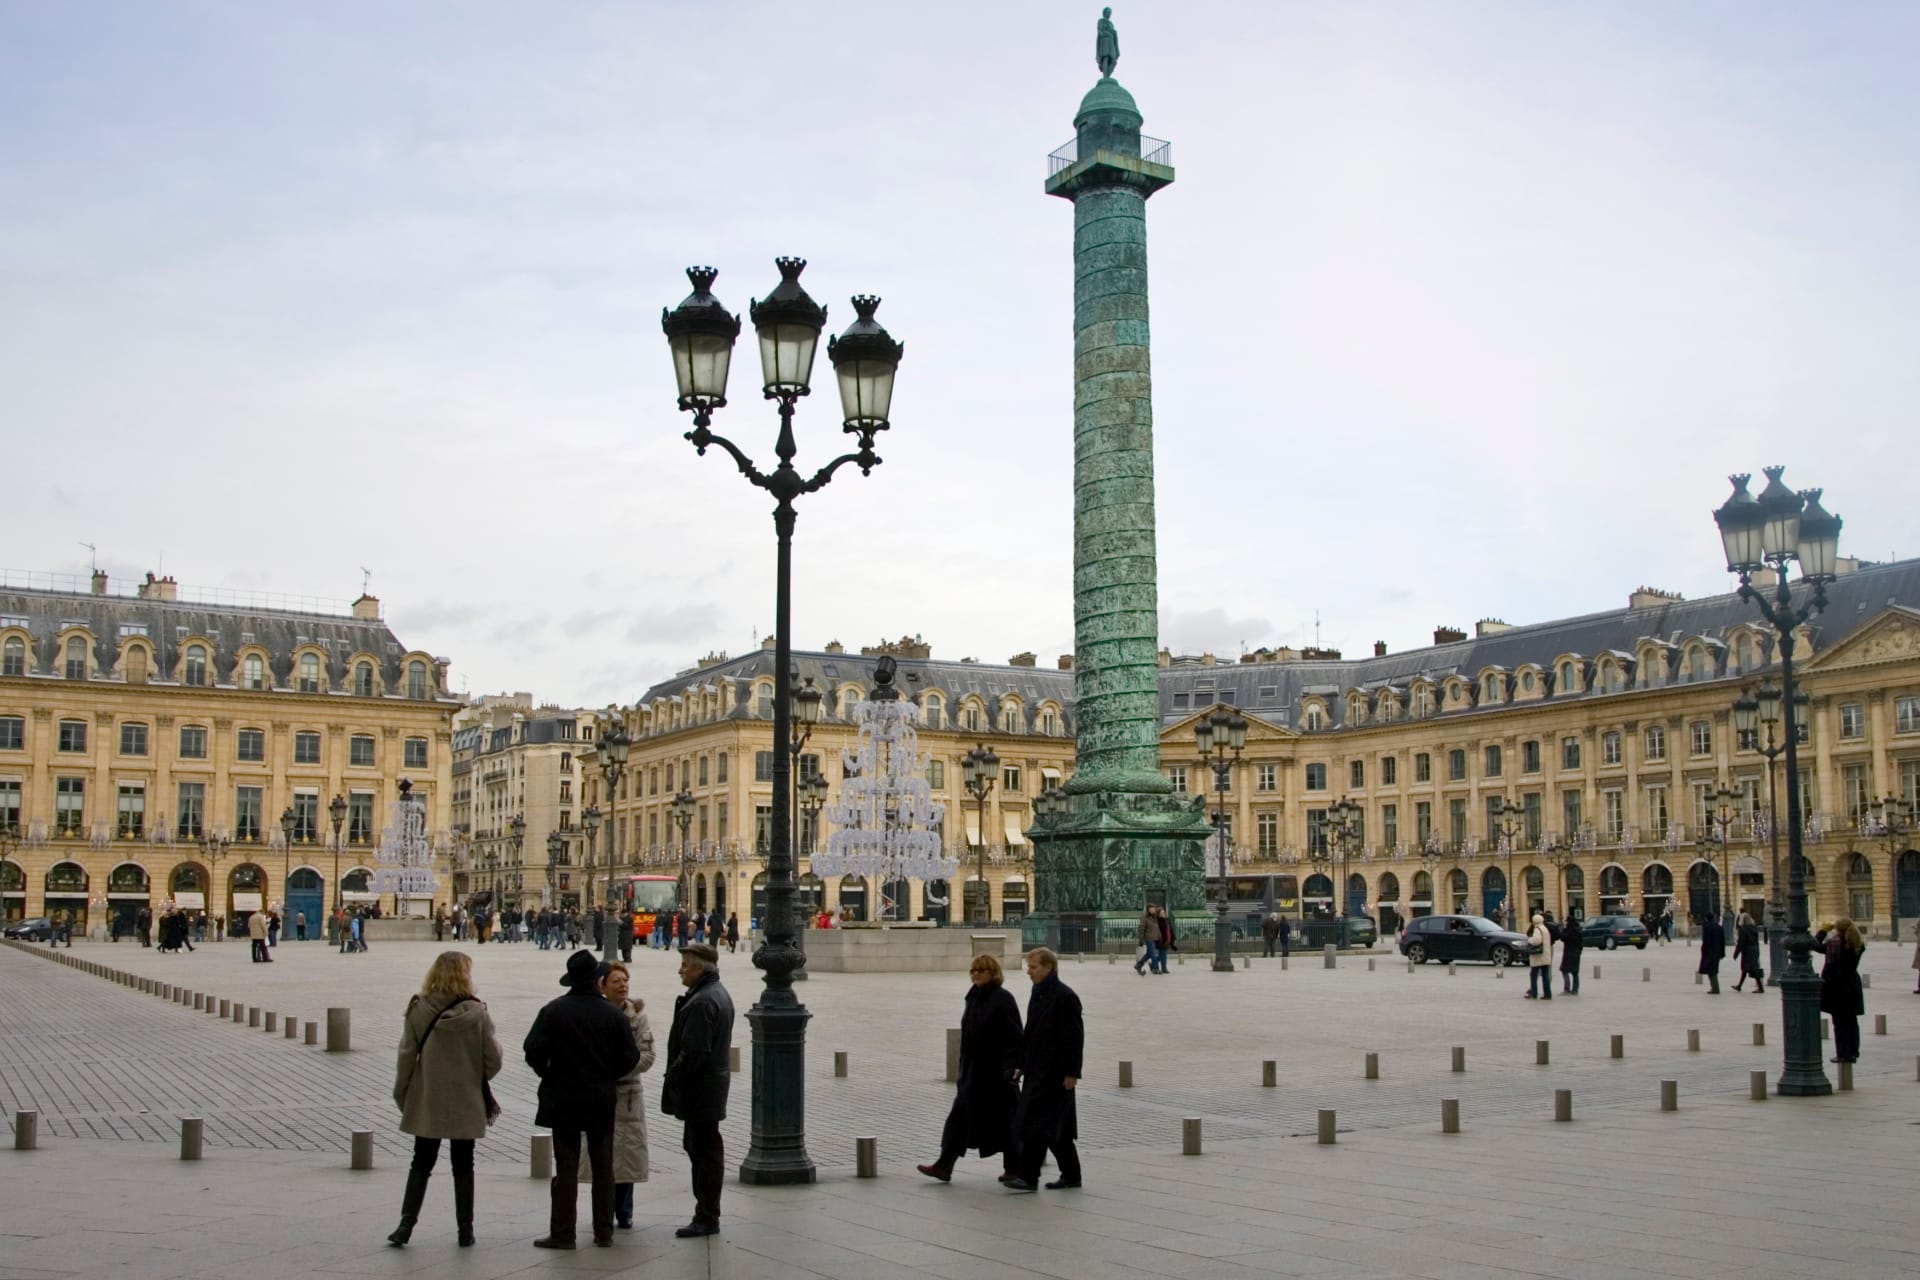 Na Slavkov zbylo ve Francii několik památek. Na snímku je 44 metrů vysoký pařížský bronzový sloup z náměstí Place Vendme, ve stejném městě vlaky jezdí na Slavkovské nádraží (Gare dAusterlitz), chodí se po Slavkovském mostě. Významným monumentem je též P...